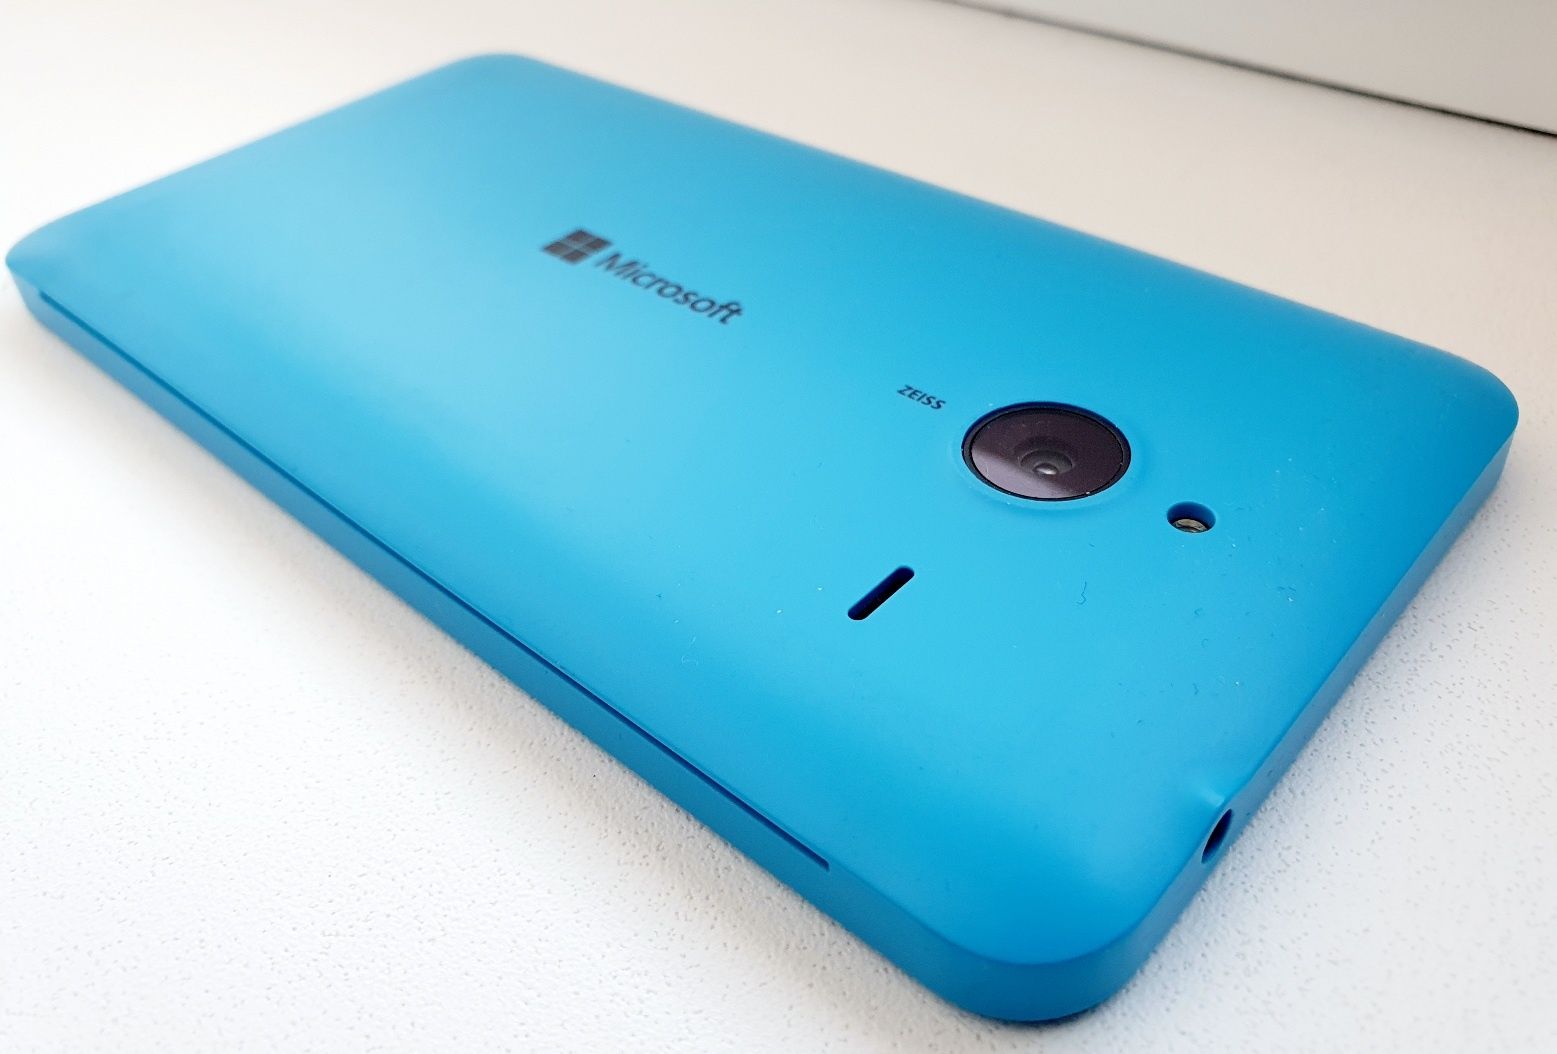 Pentru nostalgici colectie Nokia Lumia 640 XL Microsoft Windows 10ARM